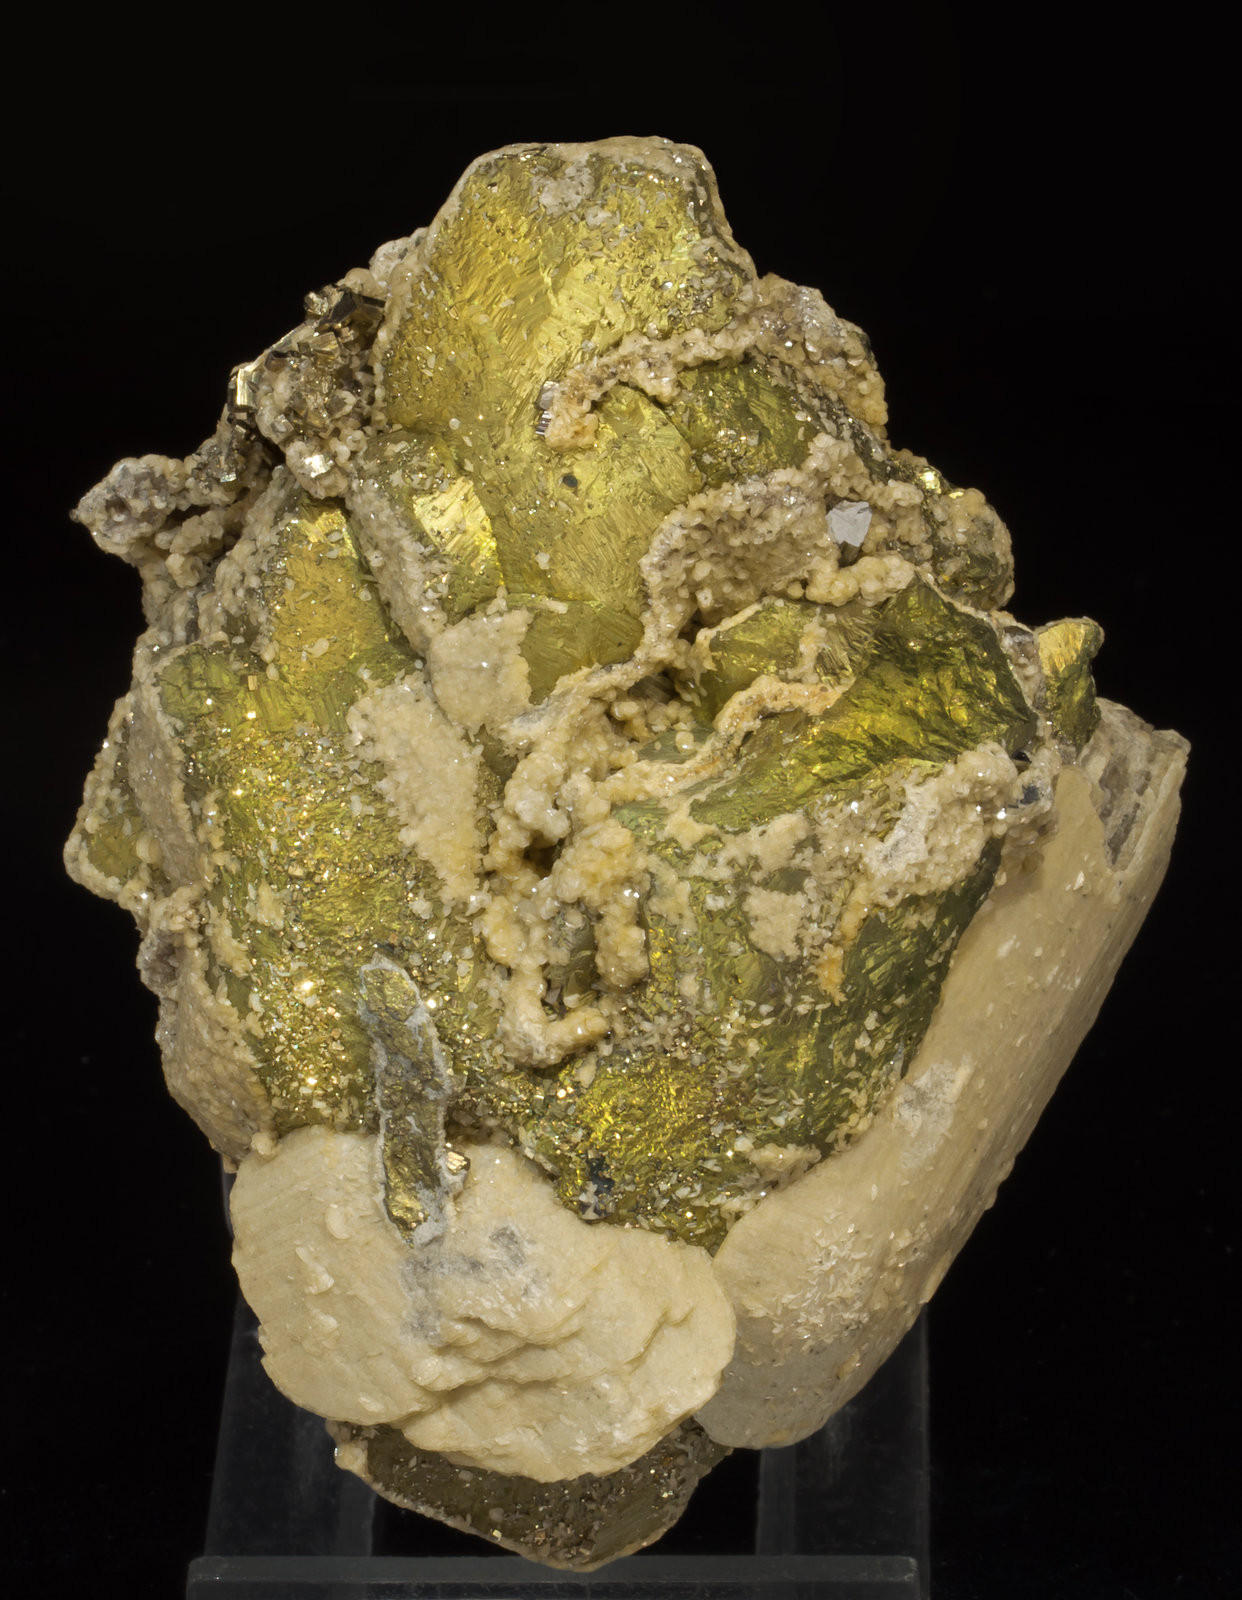 specimens/s_imagesAF2/Chalcopyrite-NJ56AF2f.jpg